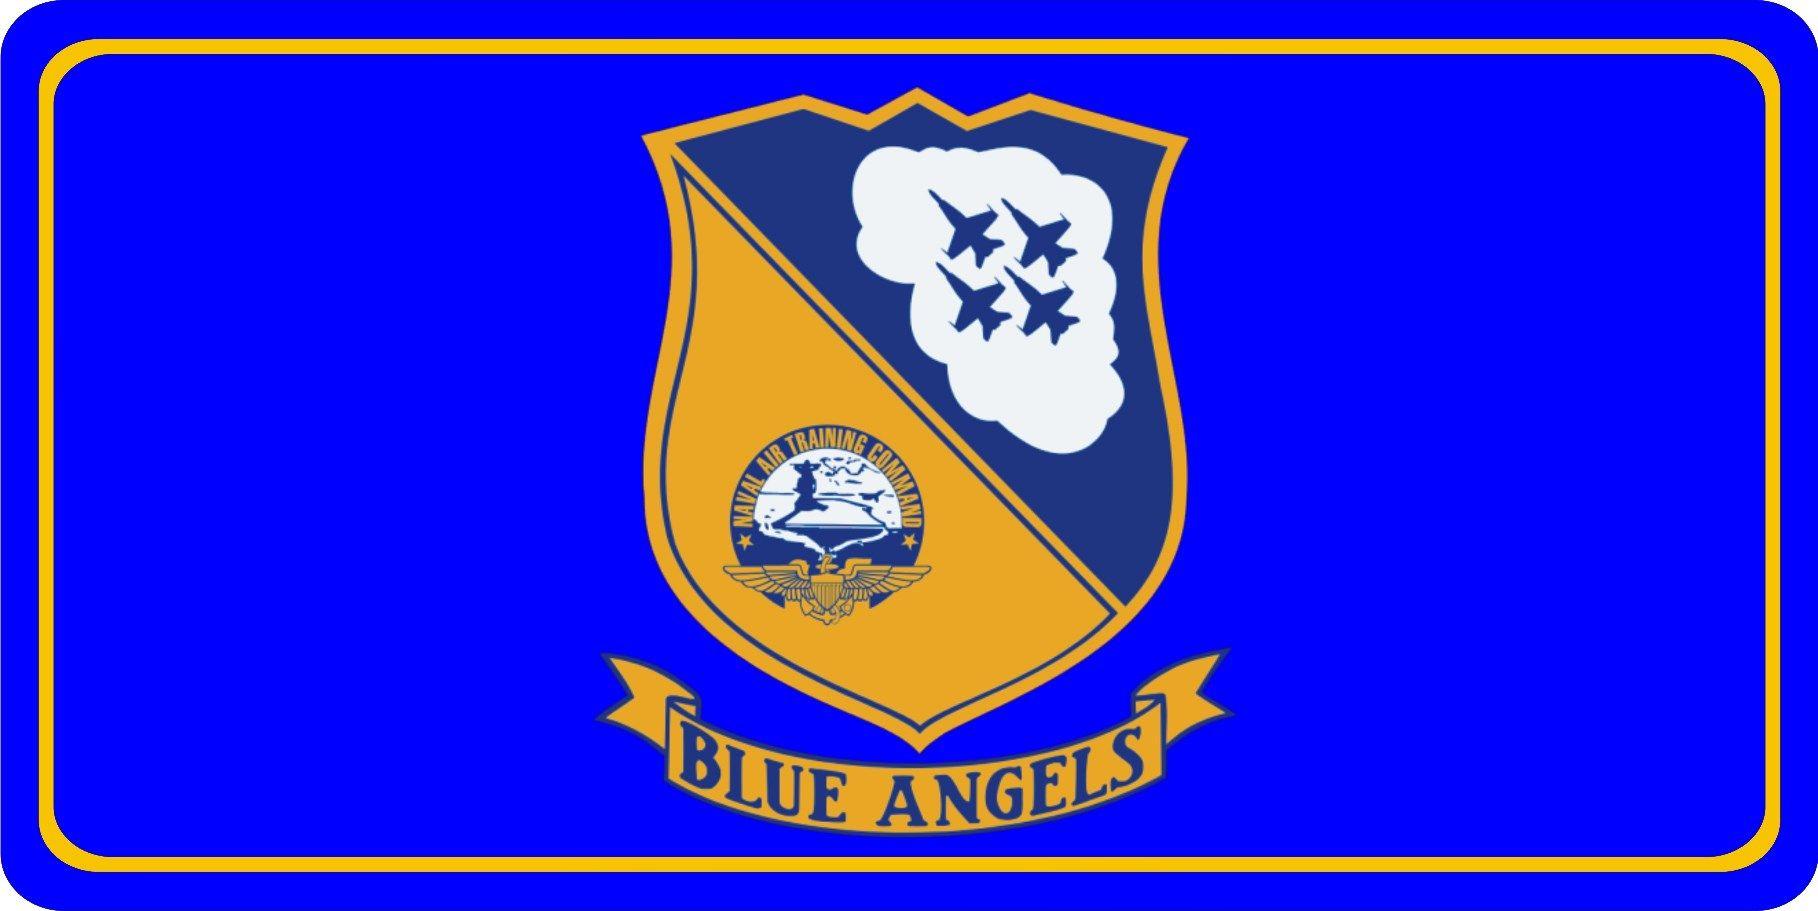 Naval Air Training Command Logo - Naval Air Training Command Blue Angels Photo License Plate Naval Air